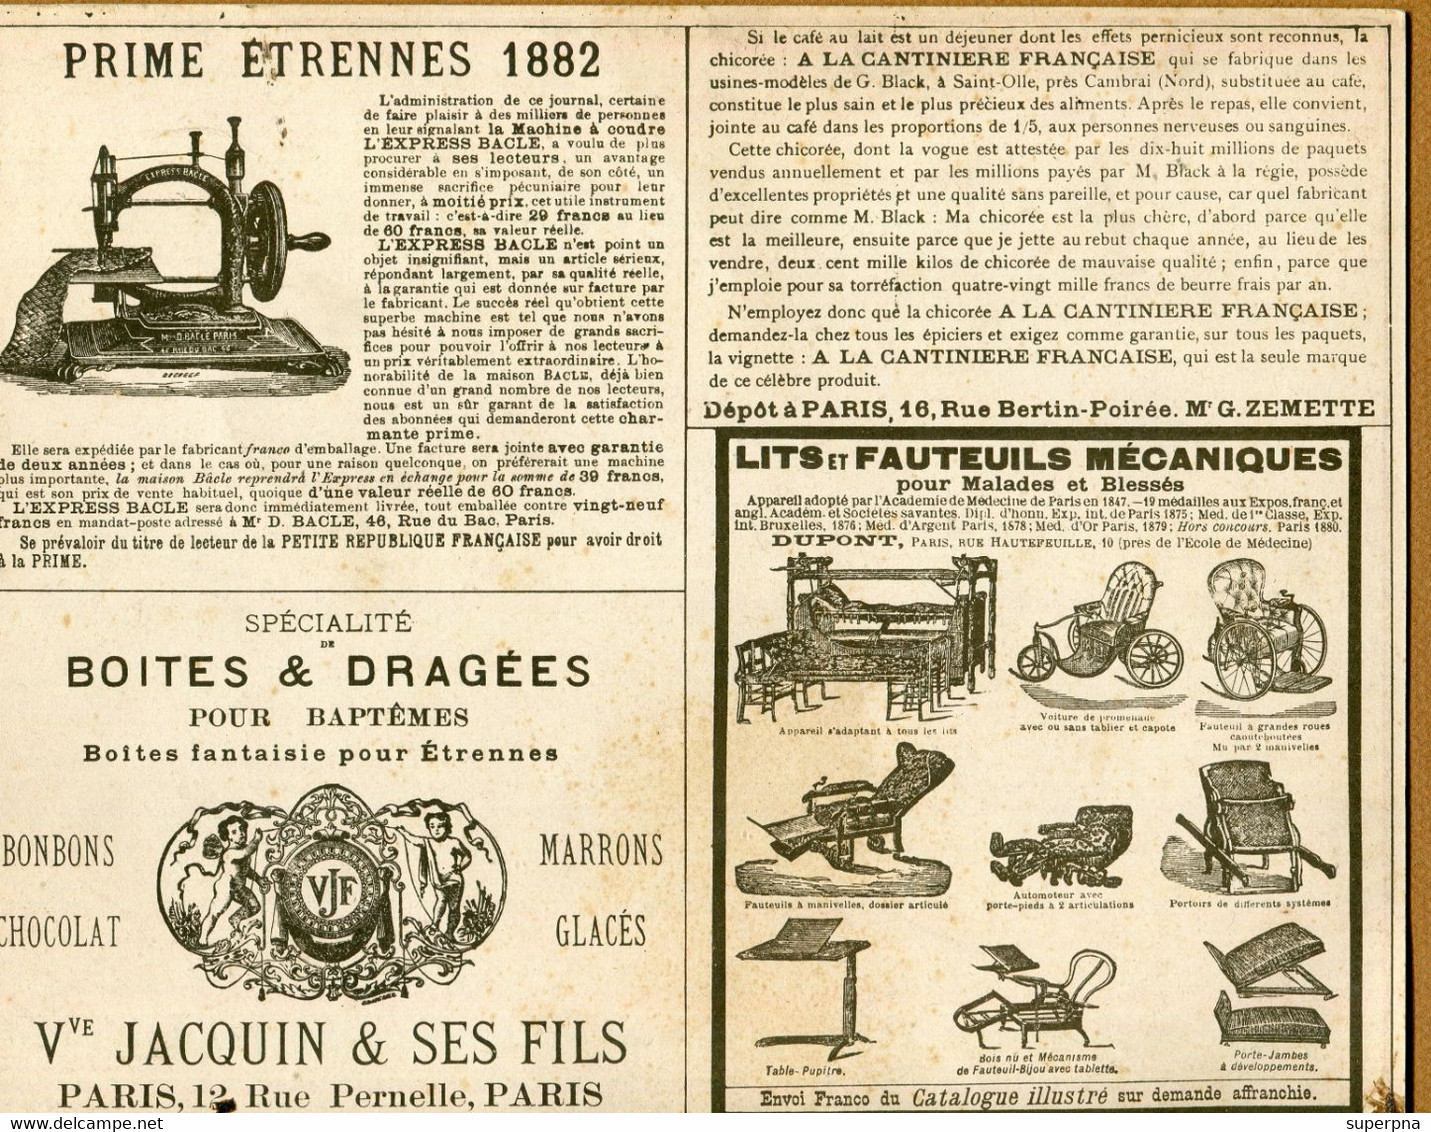 CALENDRIER 1882 : JOURNAL " LA PETITE REPUBLIQUE FRANCAISE " - Grossformat : ...-1900